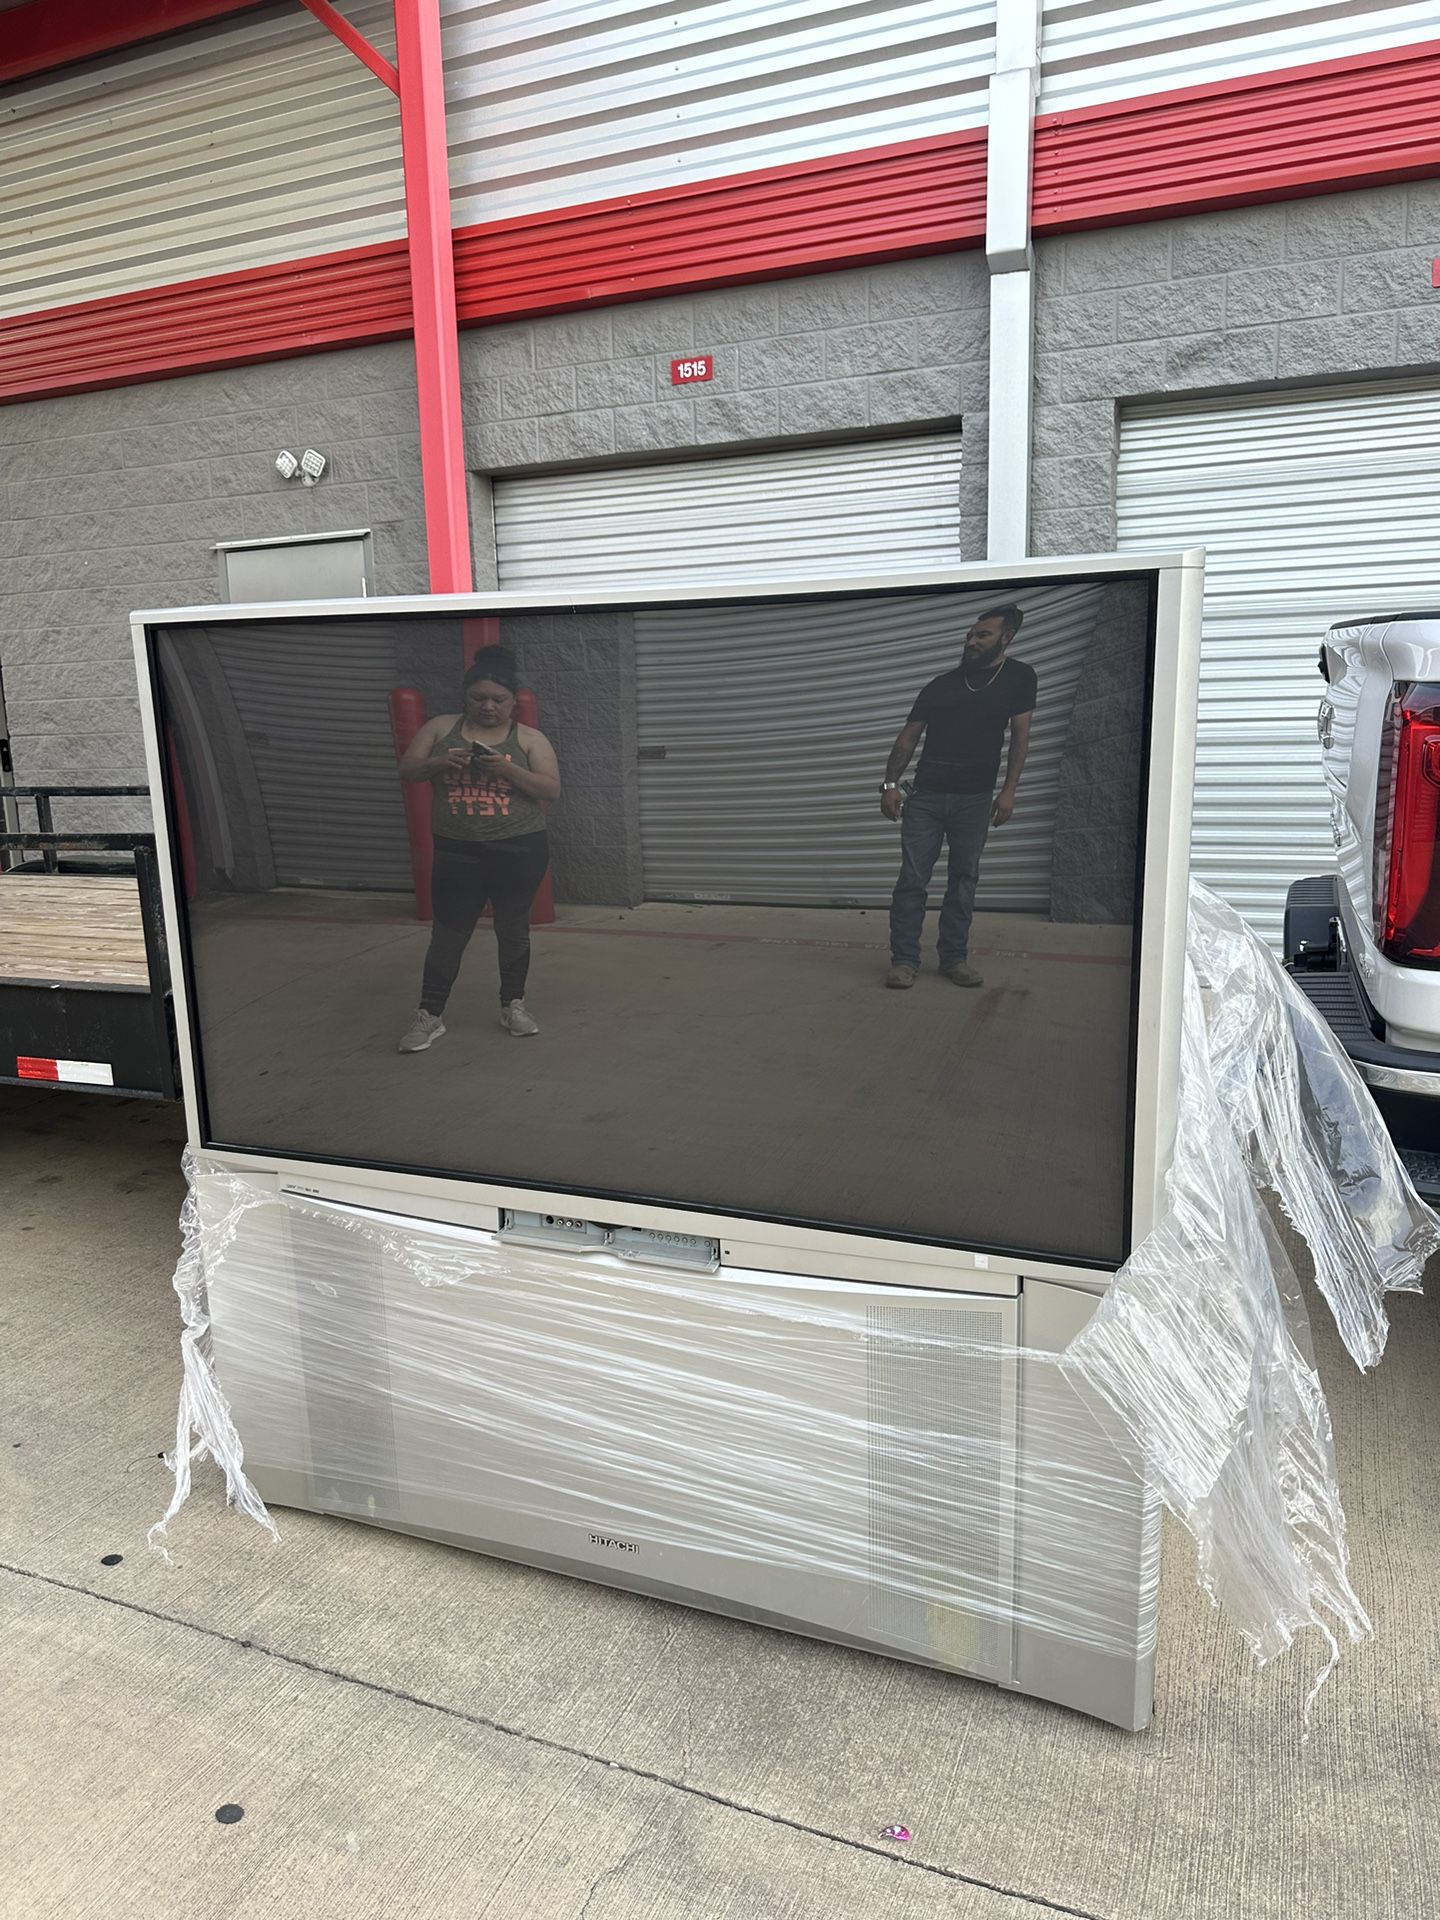 65’ Older Tv  $35